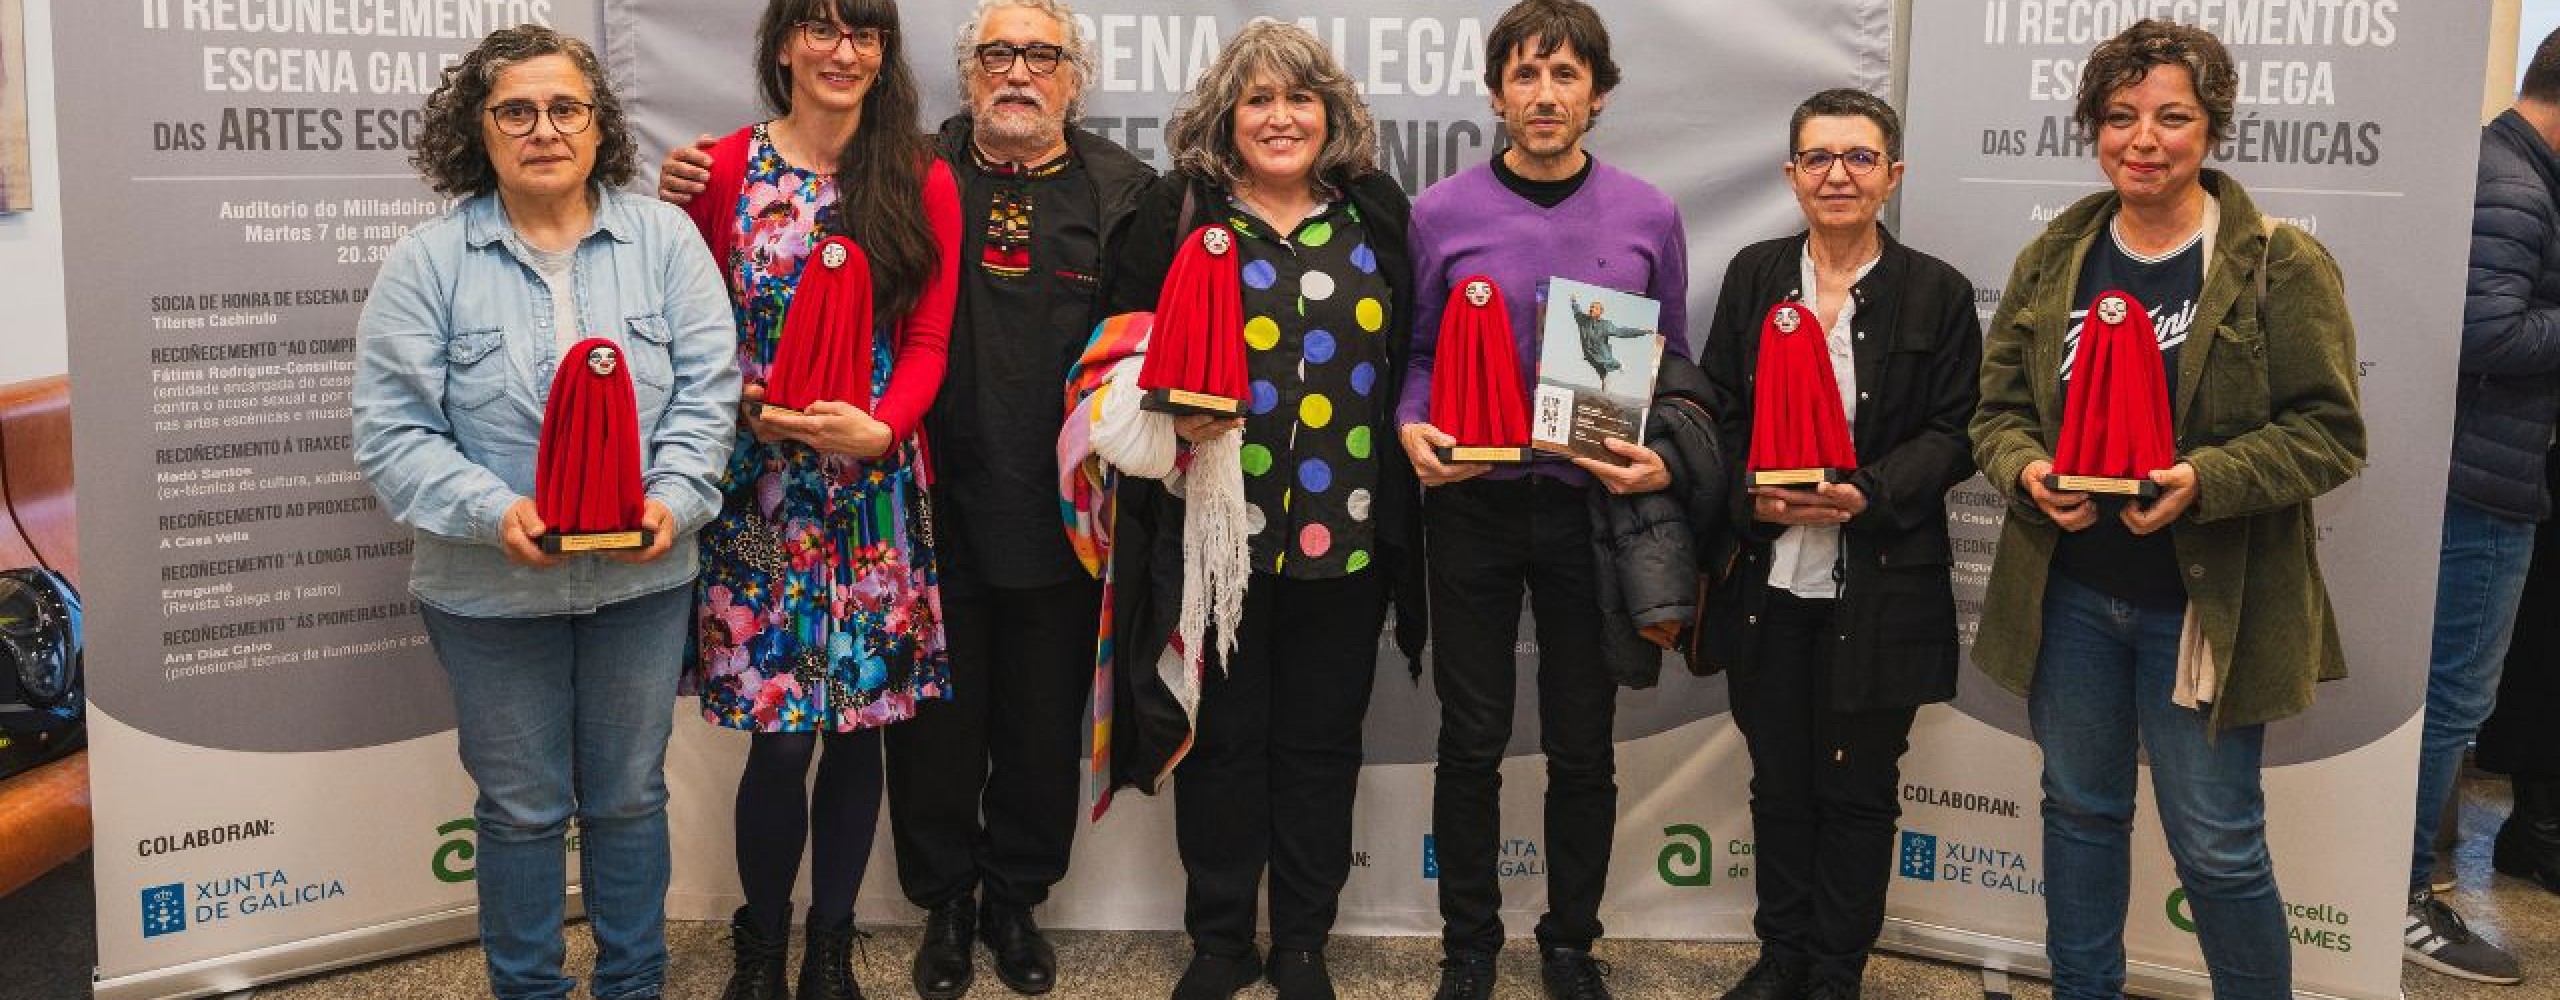  Escena Galega celebra a segunda edición dos Recoñecementos Escena Galega das Artes Escénicas, un evento non competitivo que pon en valor a contribución de compañías, entidades e outras profesionais á escena galega